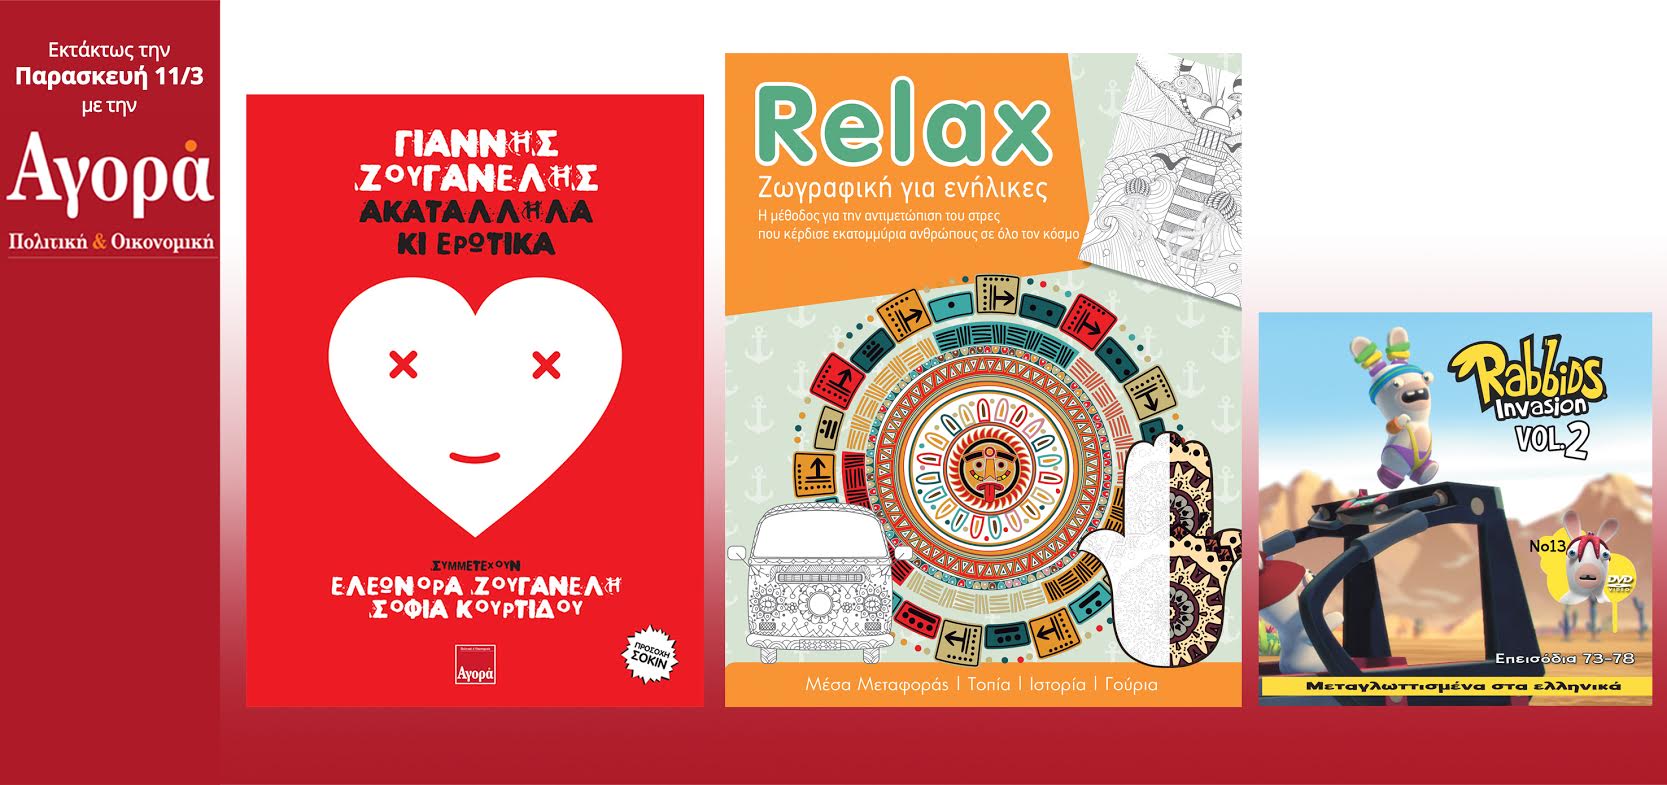 Σήμερα στην Αγορά: Νέο CD Γ.Ζουγανέλης,Relax (βιβλίο Anti-Stress) και Rabbids